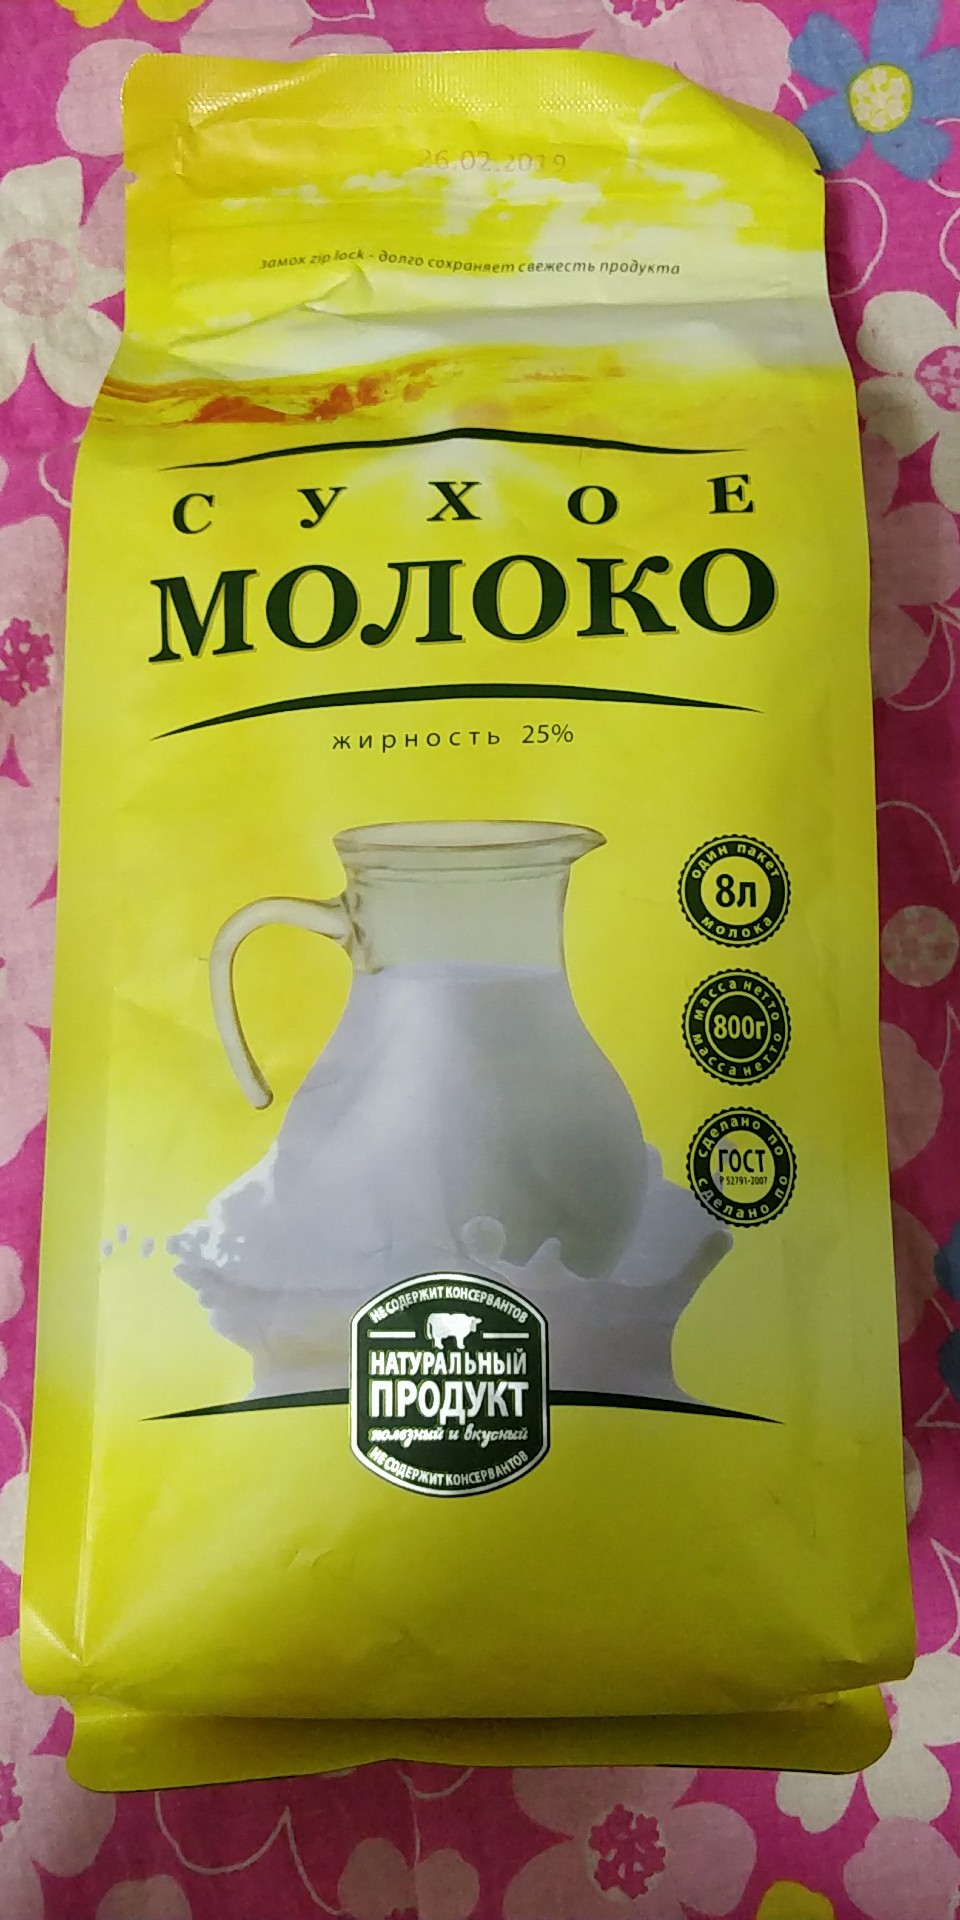 俄罗斯奶粉哪种最好图图片